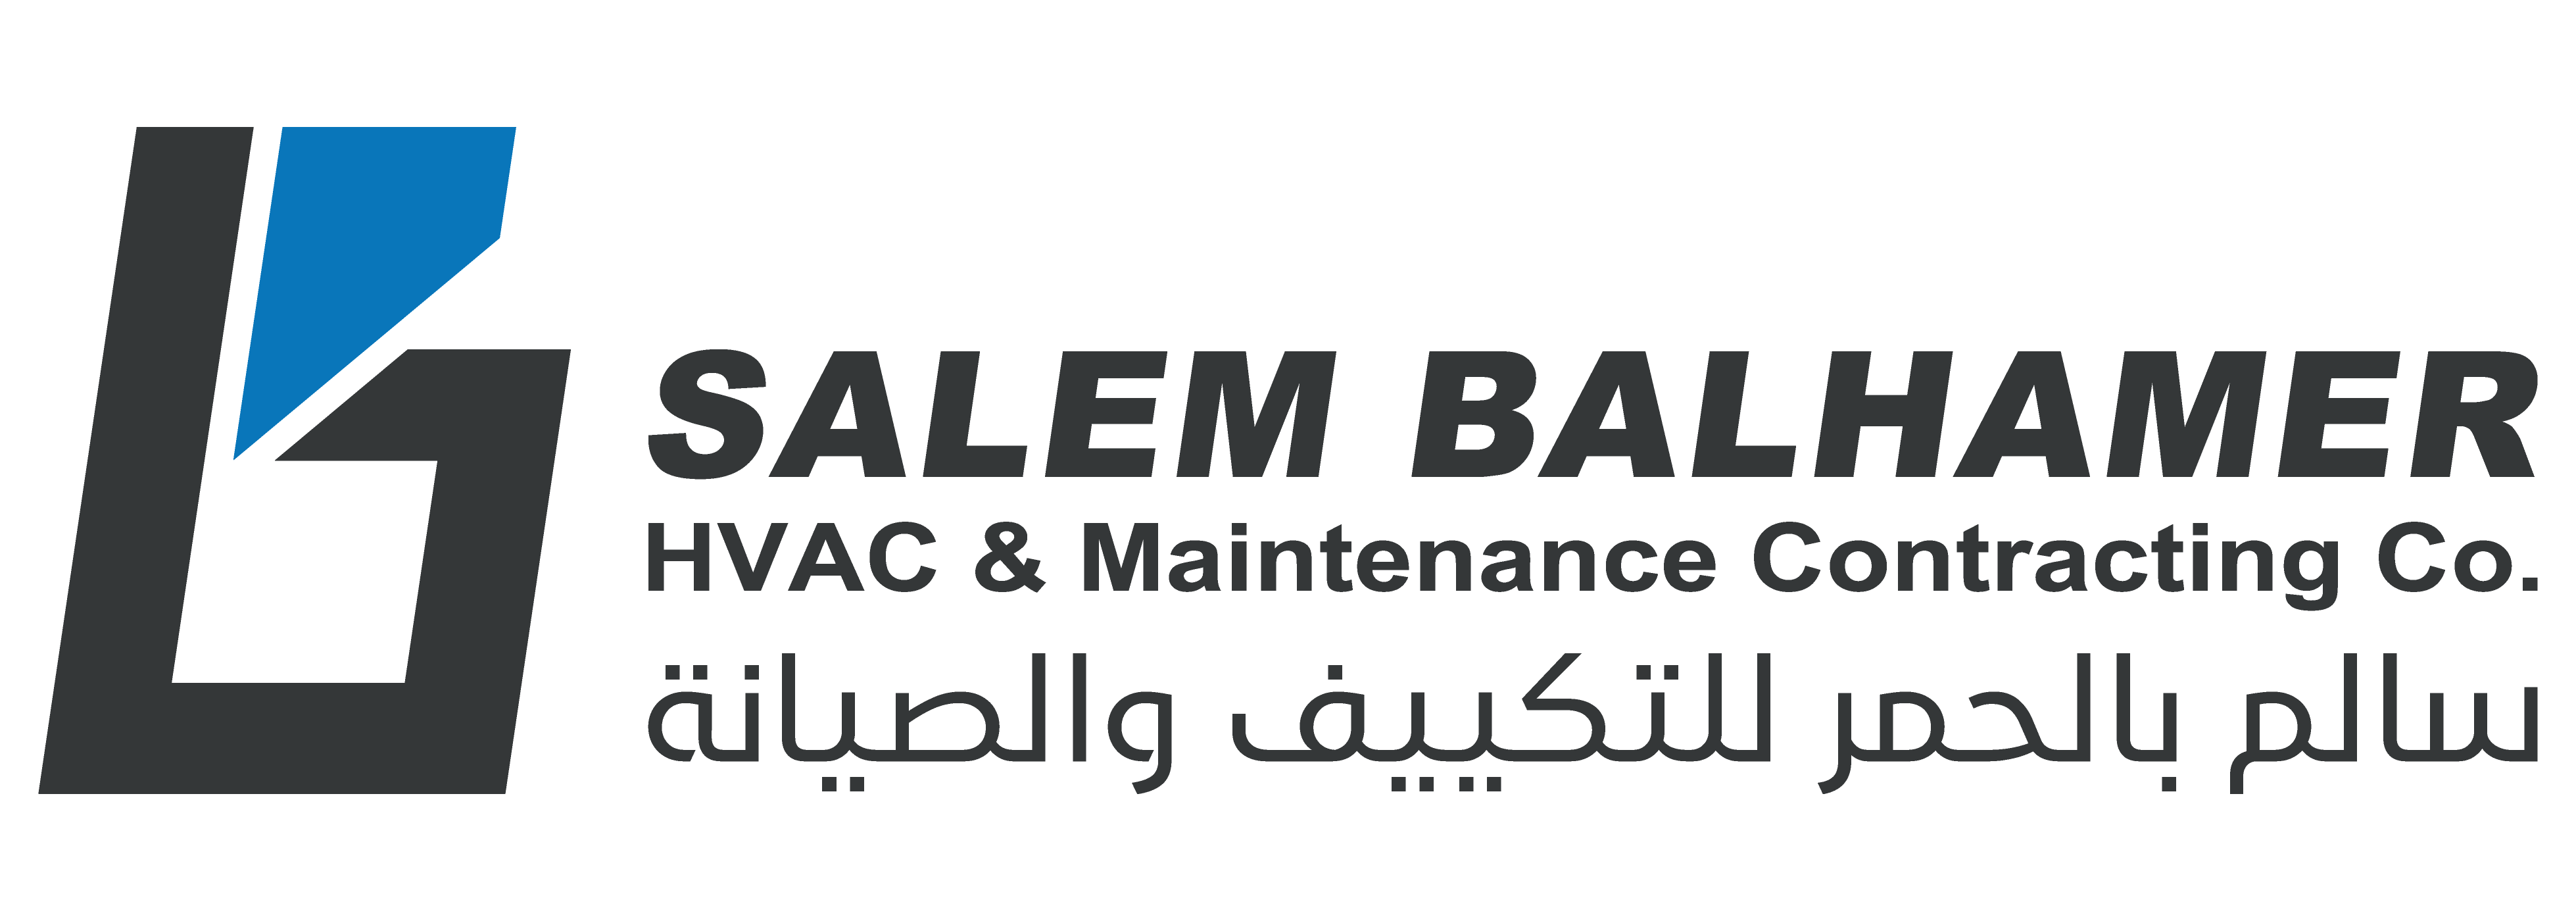 SALEM BALHAMER HVAC